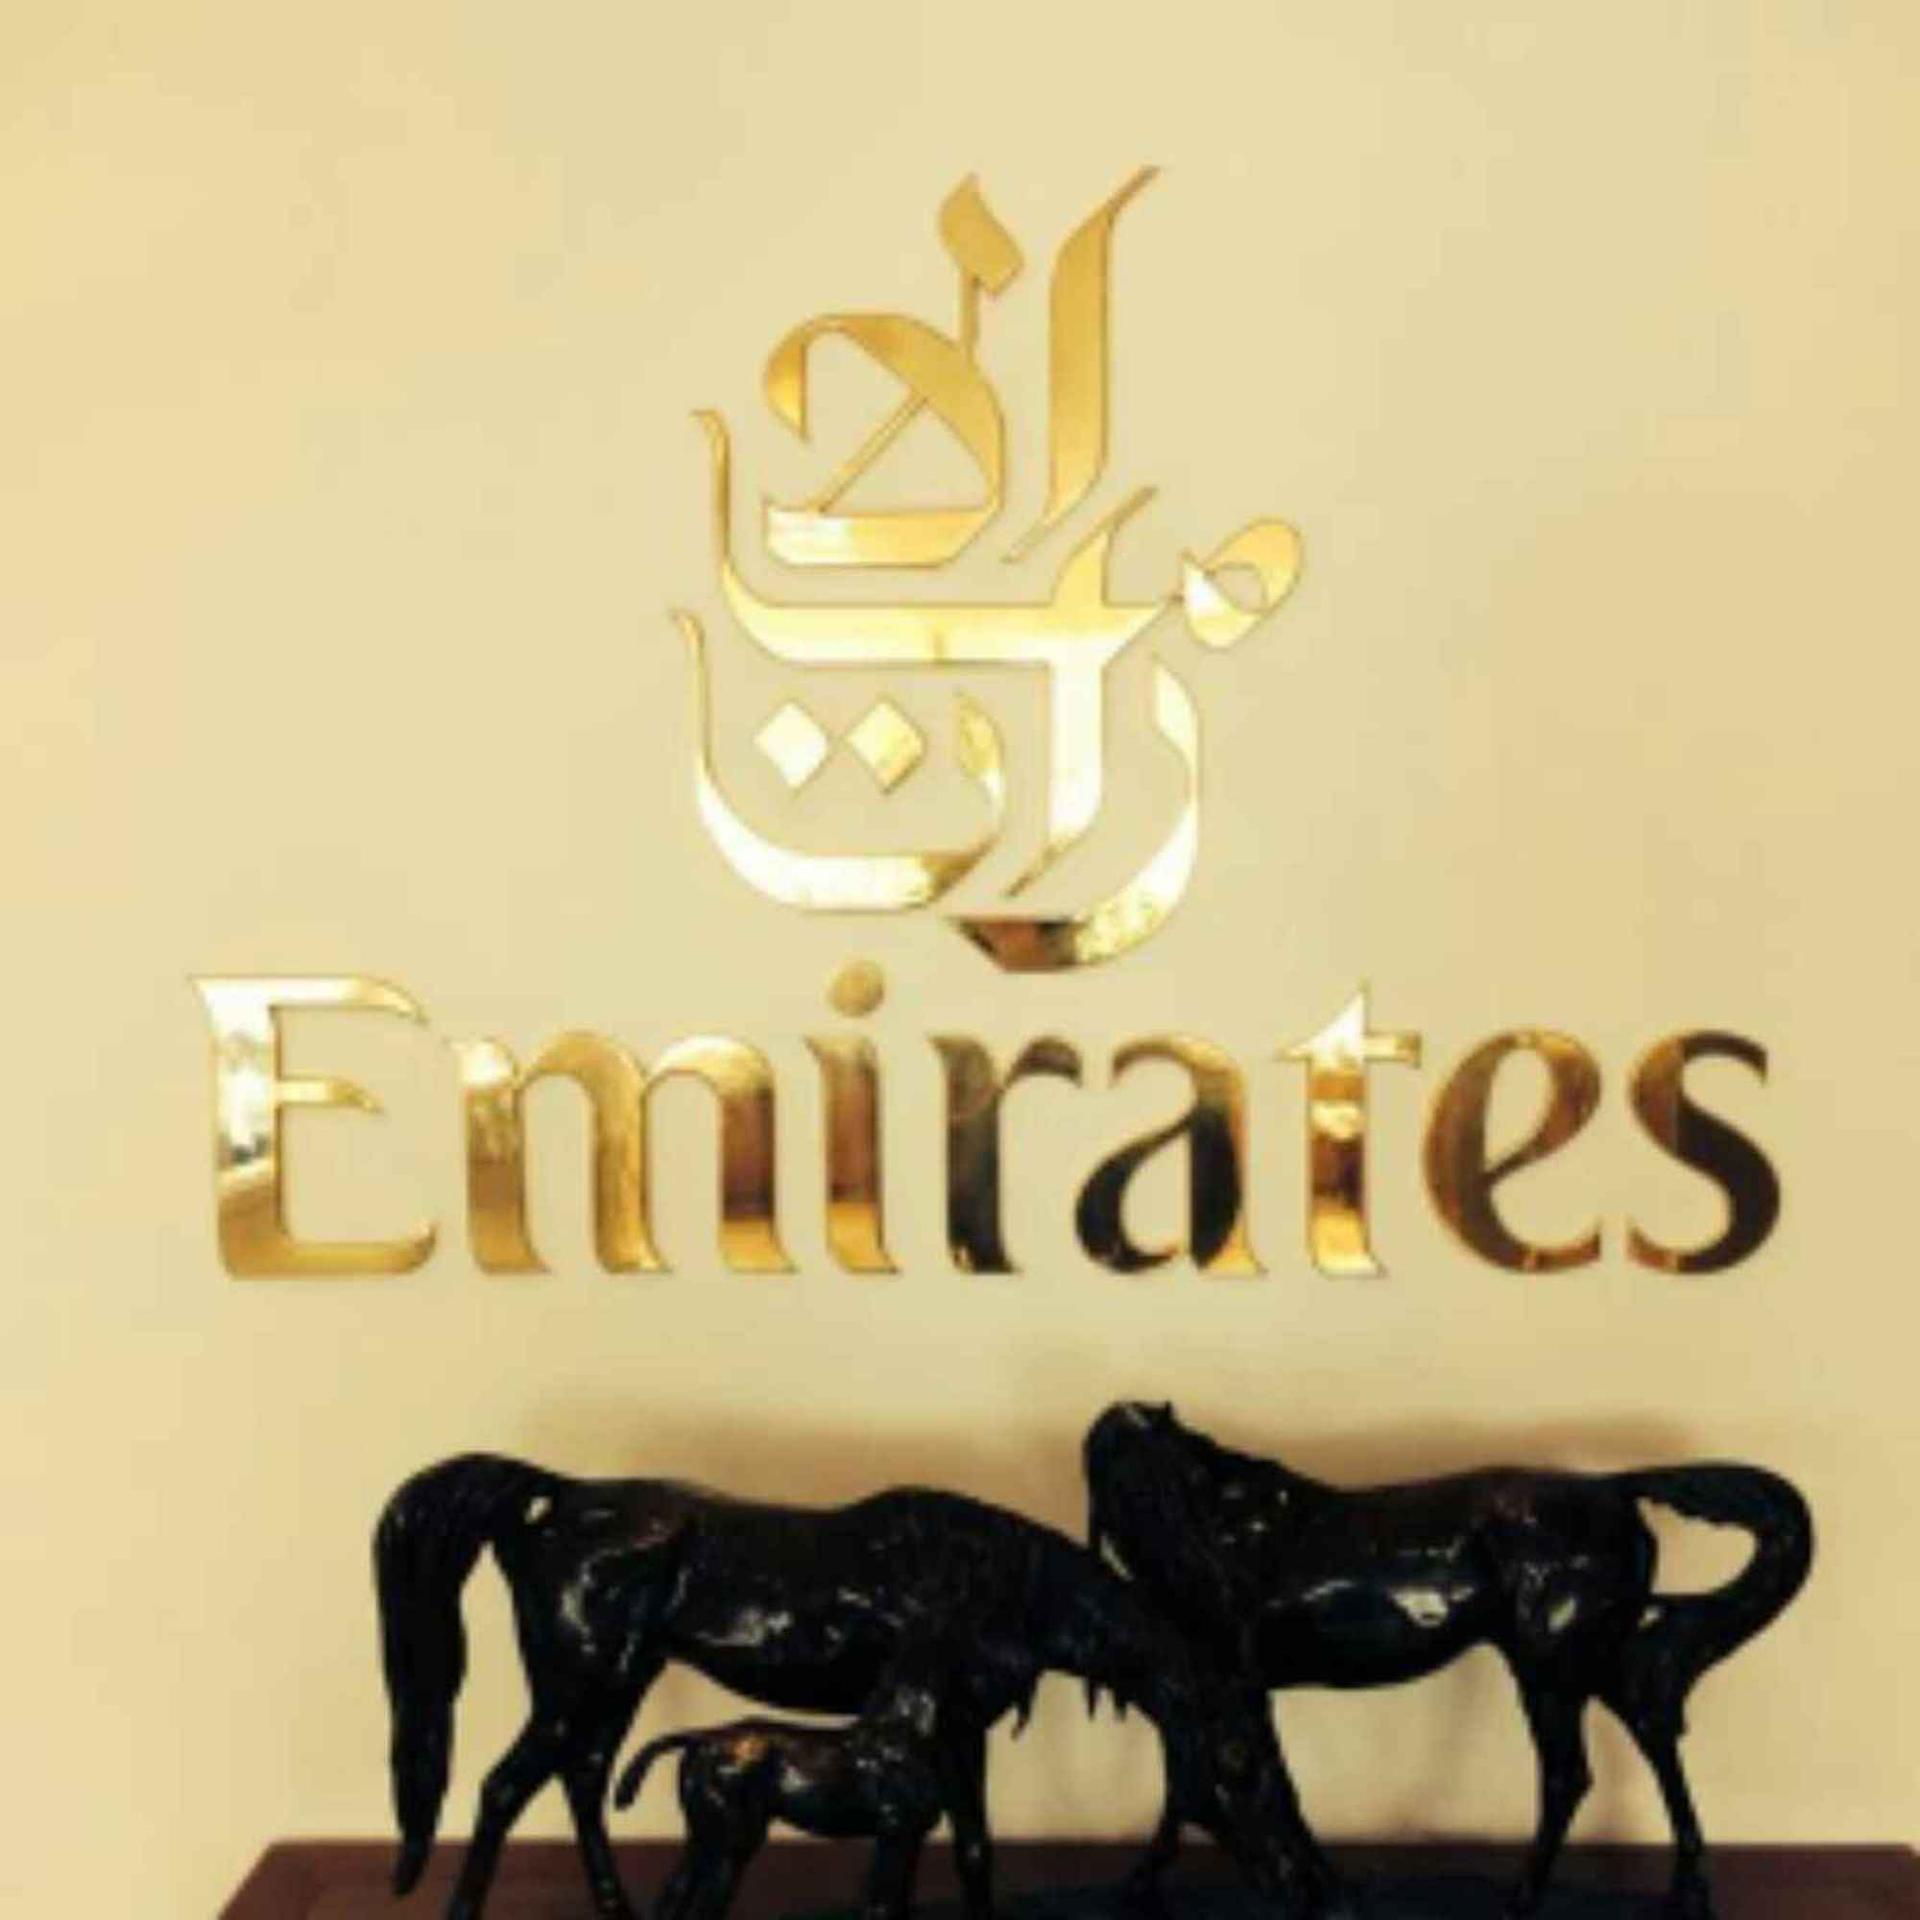 The Emirates Lounge image 5 of 5